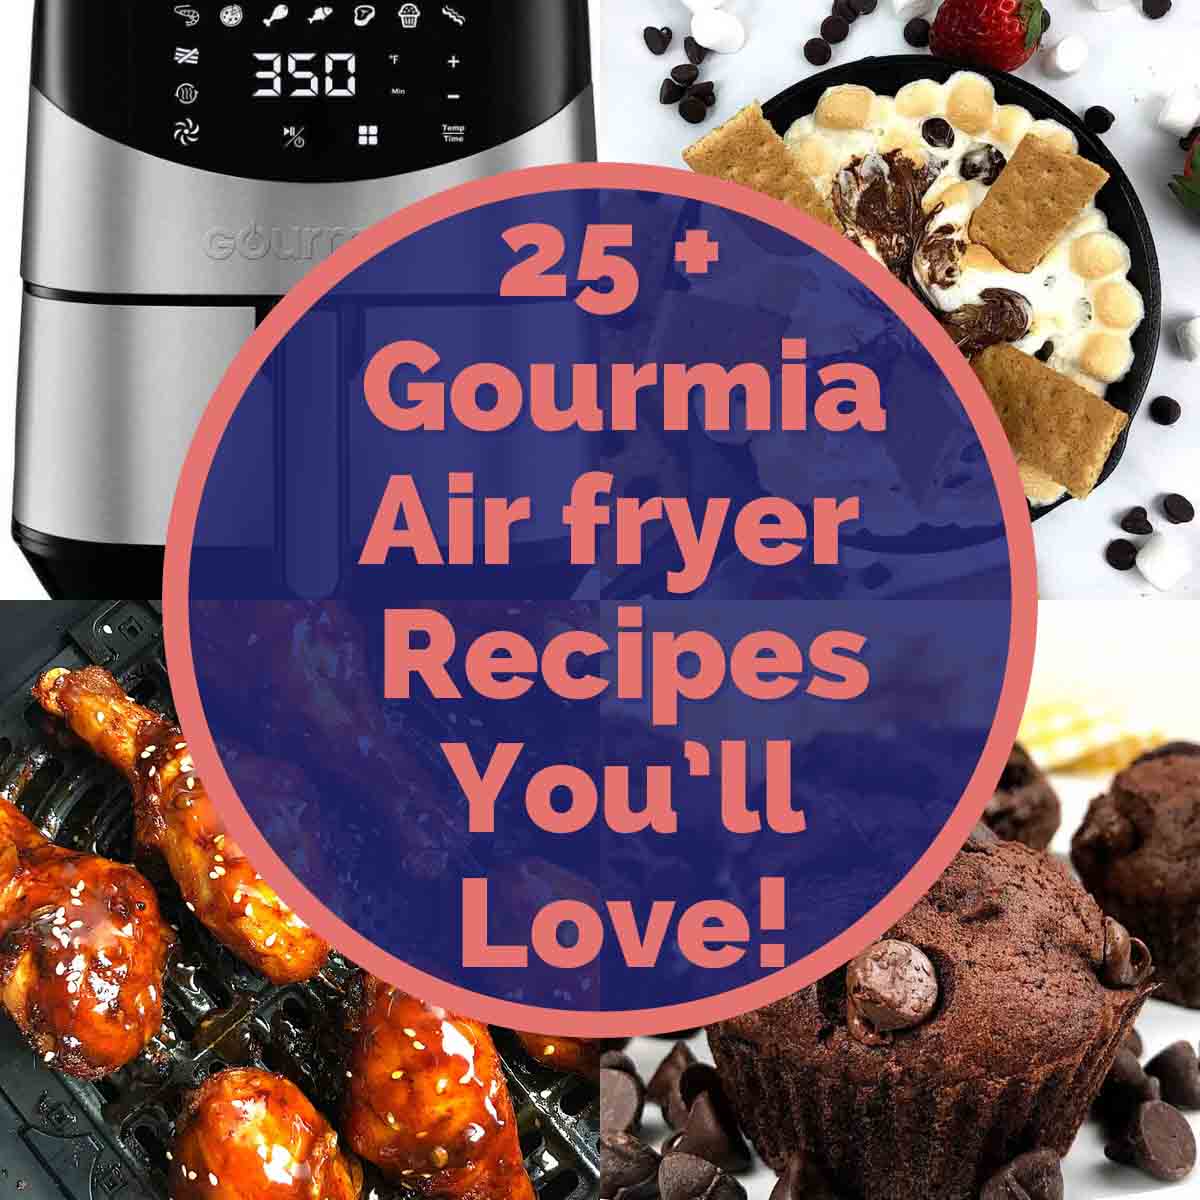 Gourmia Air fryer Recipes - Air Fryer Yum